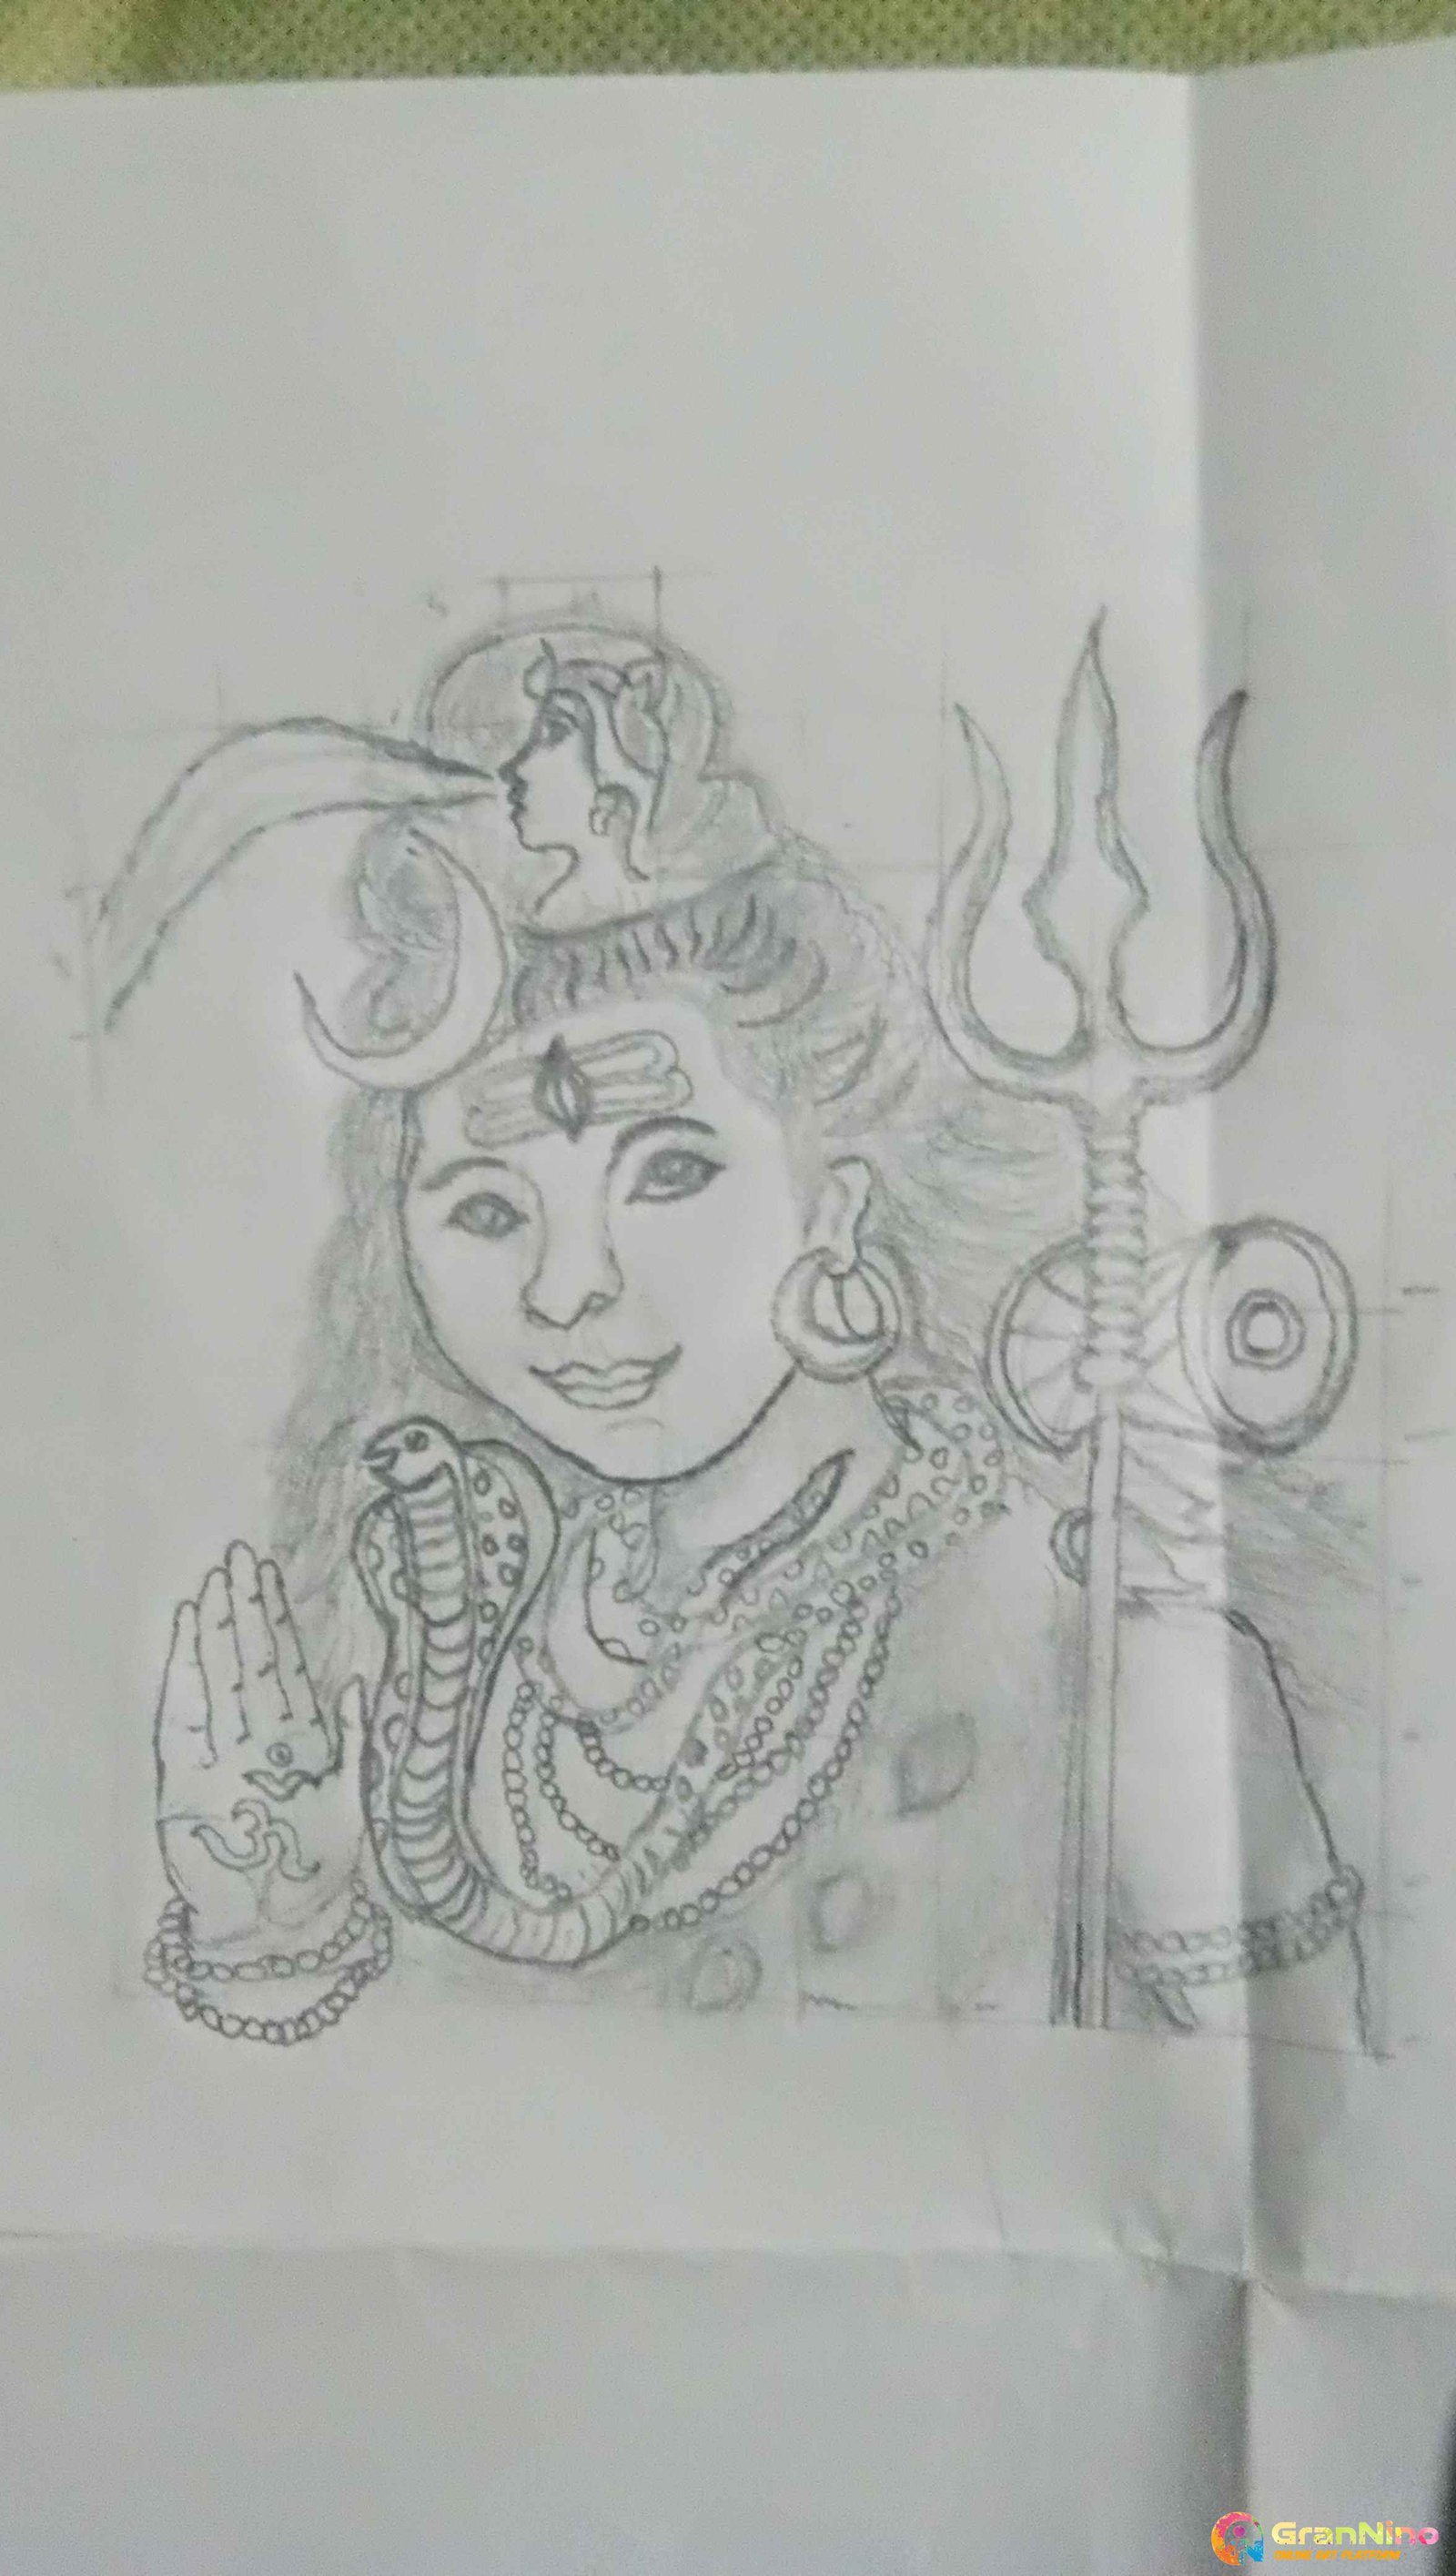 Brilliant Pencil Sketch Of Lord Shiva | DesiPainters.com